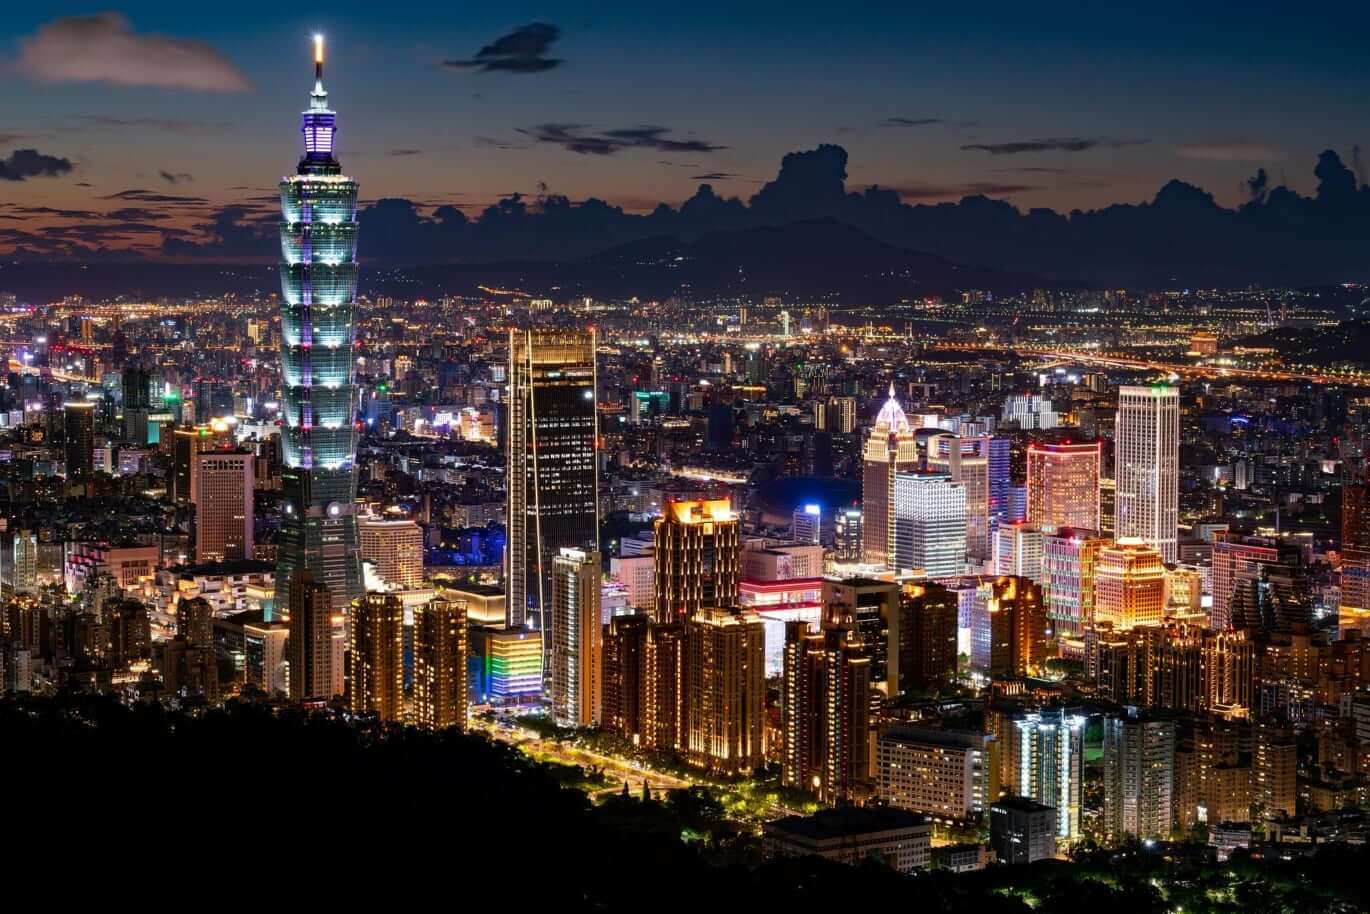 Taipei City skyline at night